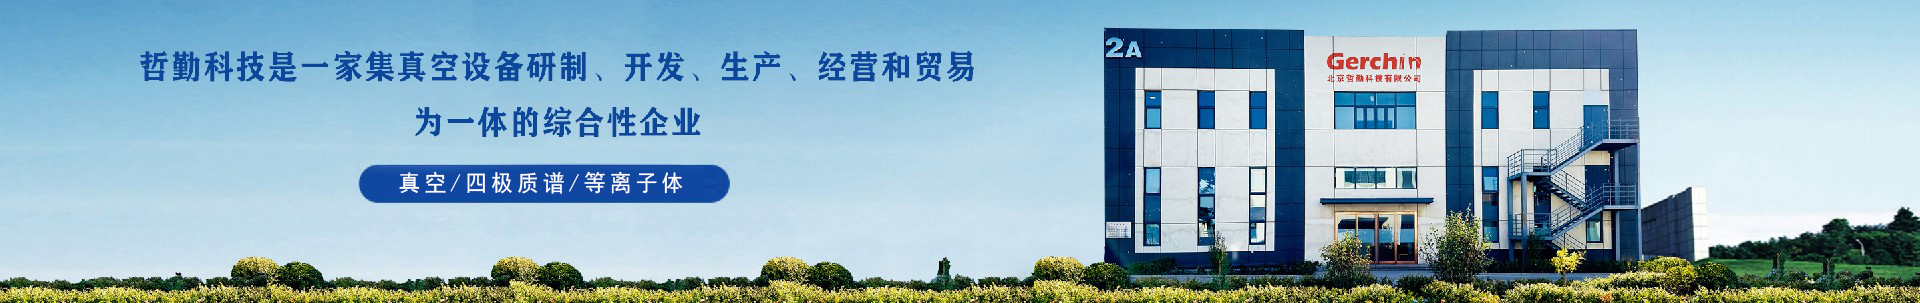 真空部件类产品-北京哲勤科技有限公司